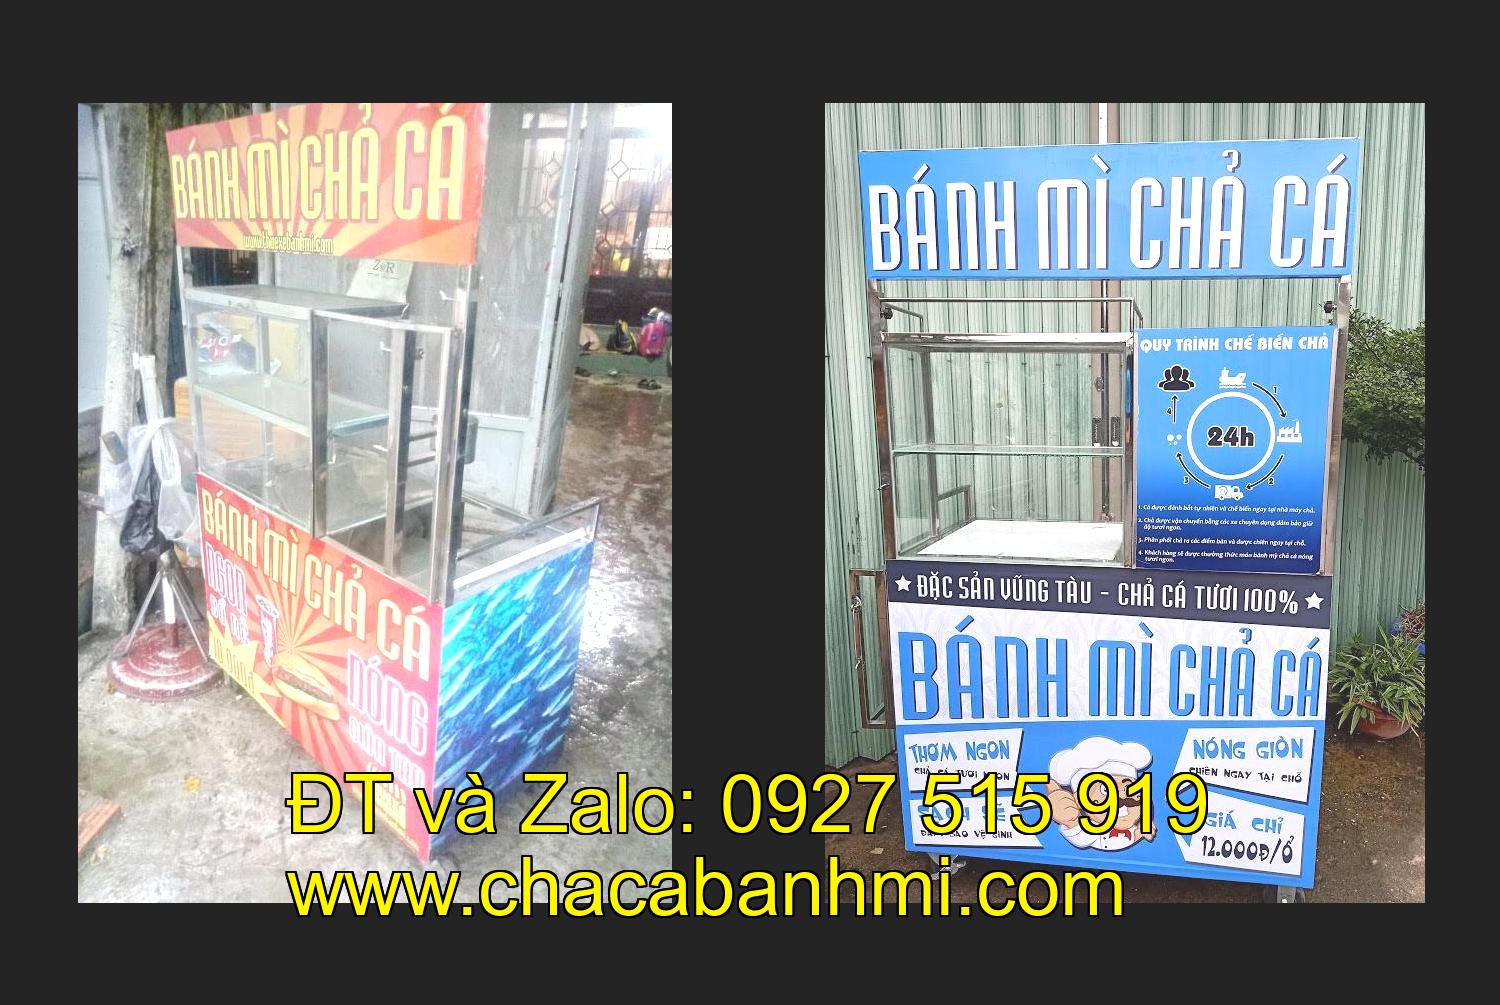 Bán xe bánh mì chả cá tại tỉnh Bình Định